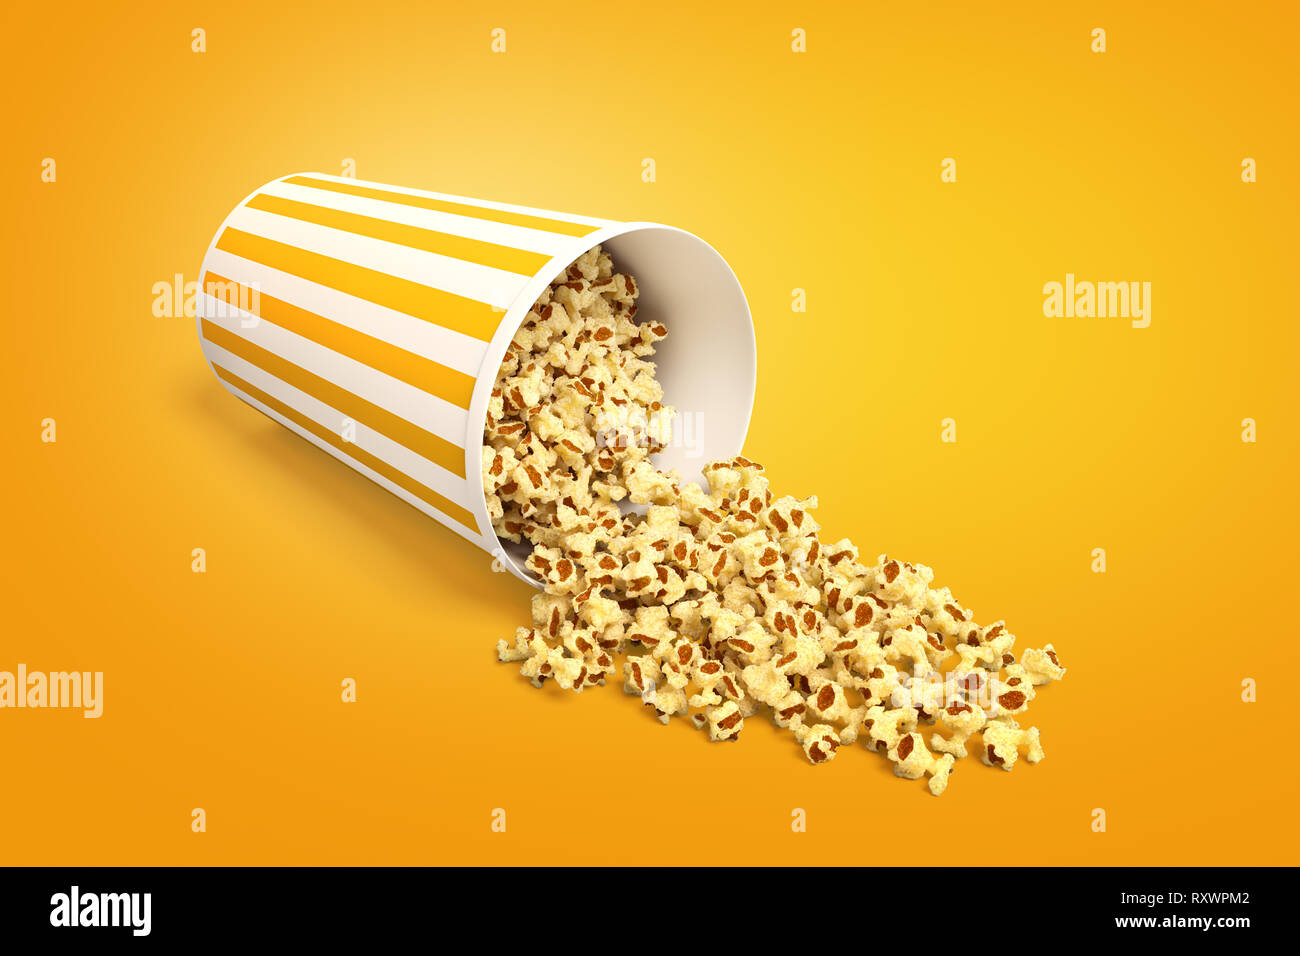 Le rendu 3D d'un seau de maîs éclaté en coin allongé avec du popcorn, renversé. Banque D'Images